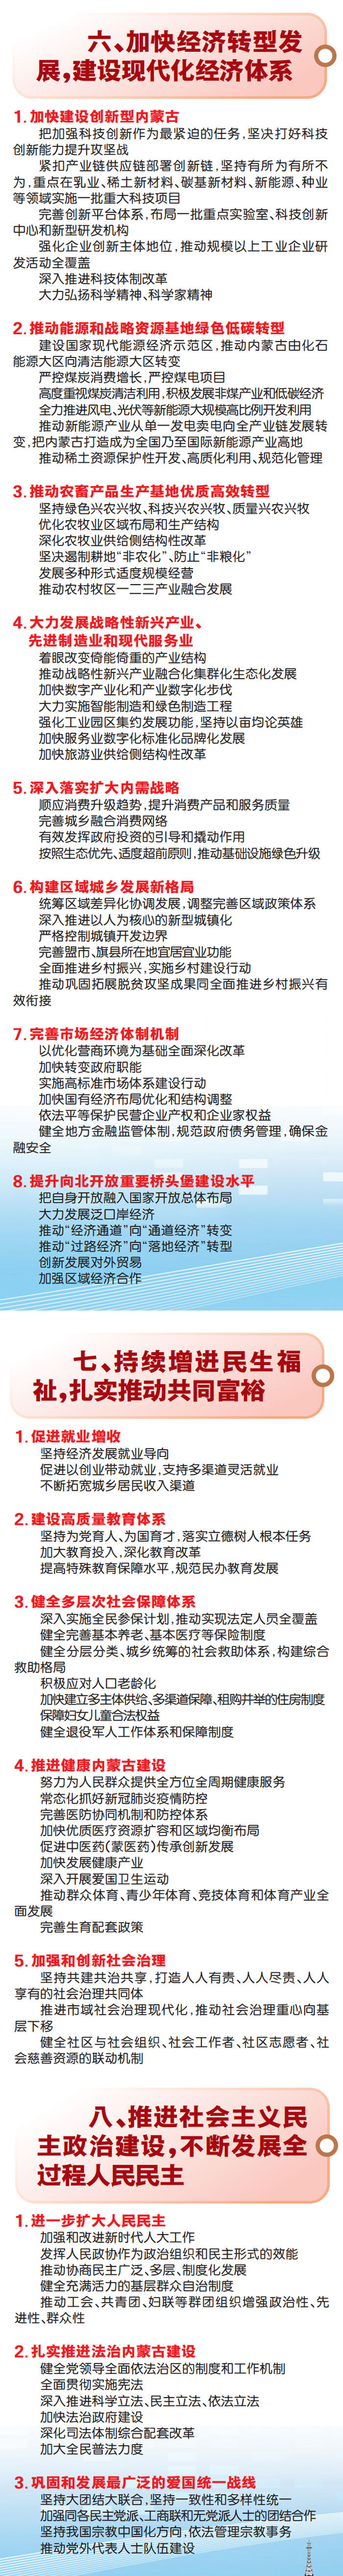 图解丨自治区第十一次党代会报告重点来了 (http://www.lyjimeng.com/) 国内 第5张